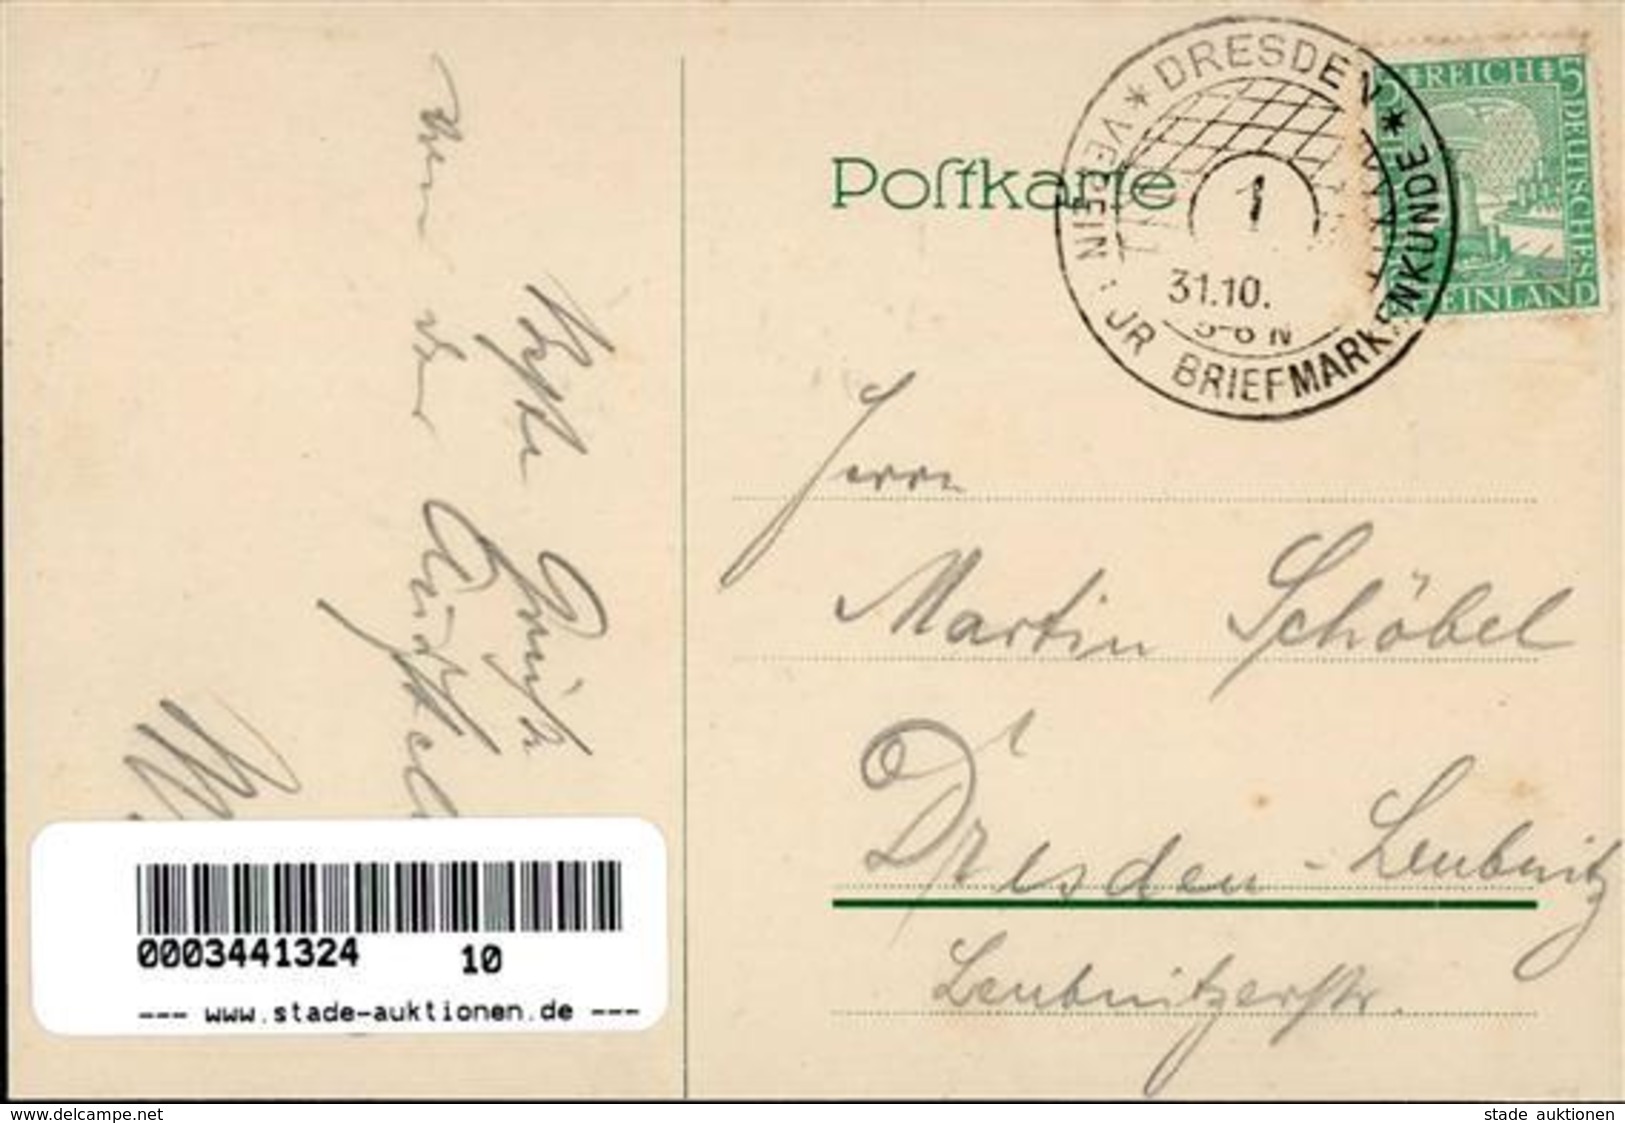 Philatelistentag Wissenschaftliche Tagung Des Vereins Für Briefmarkenkunde Künstlerkarte I-II - Postal Services